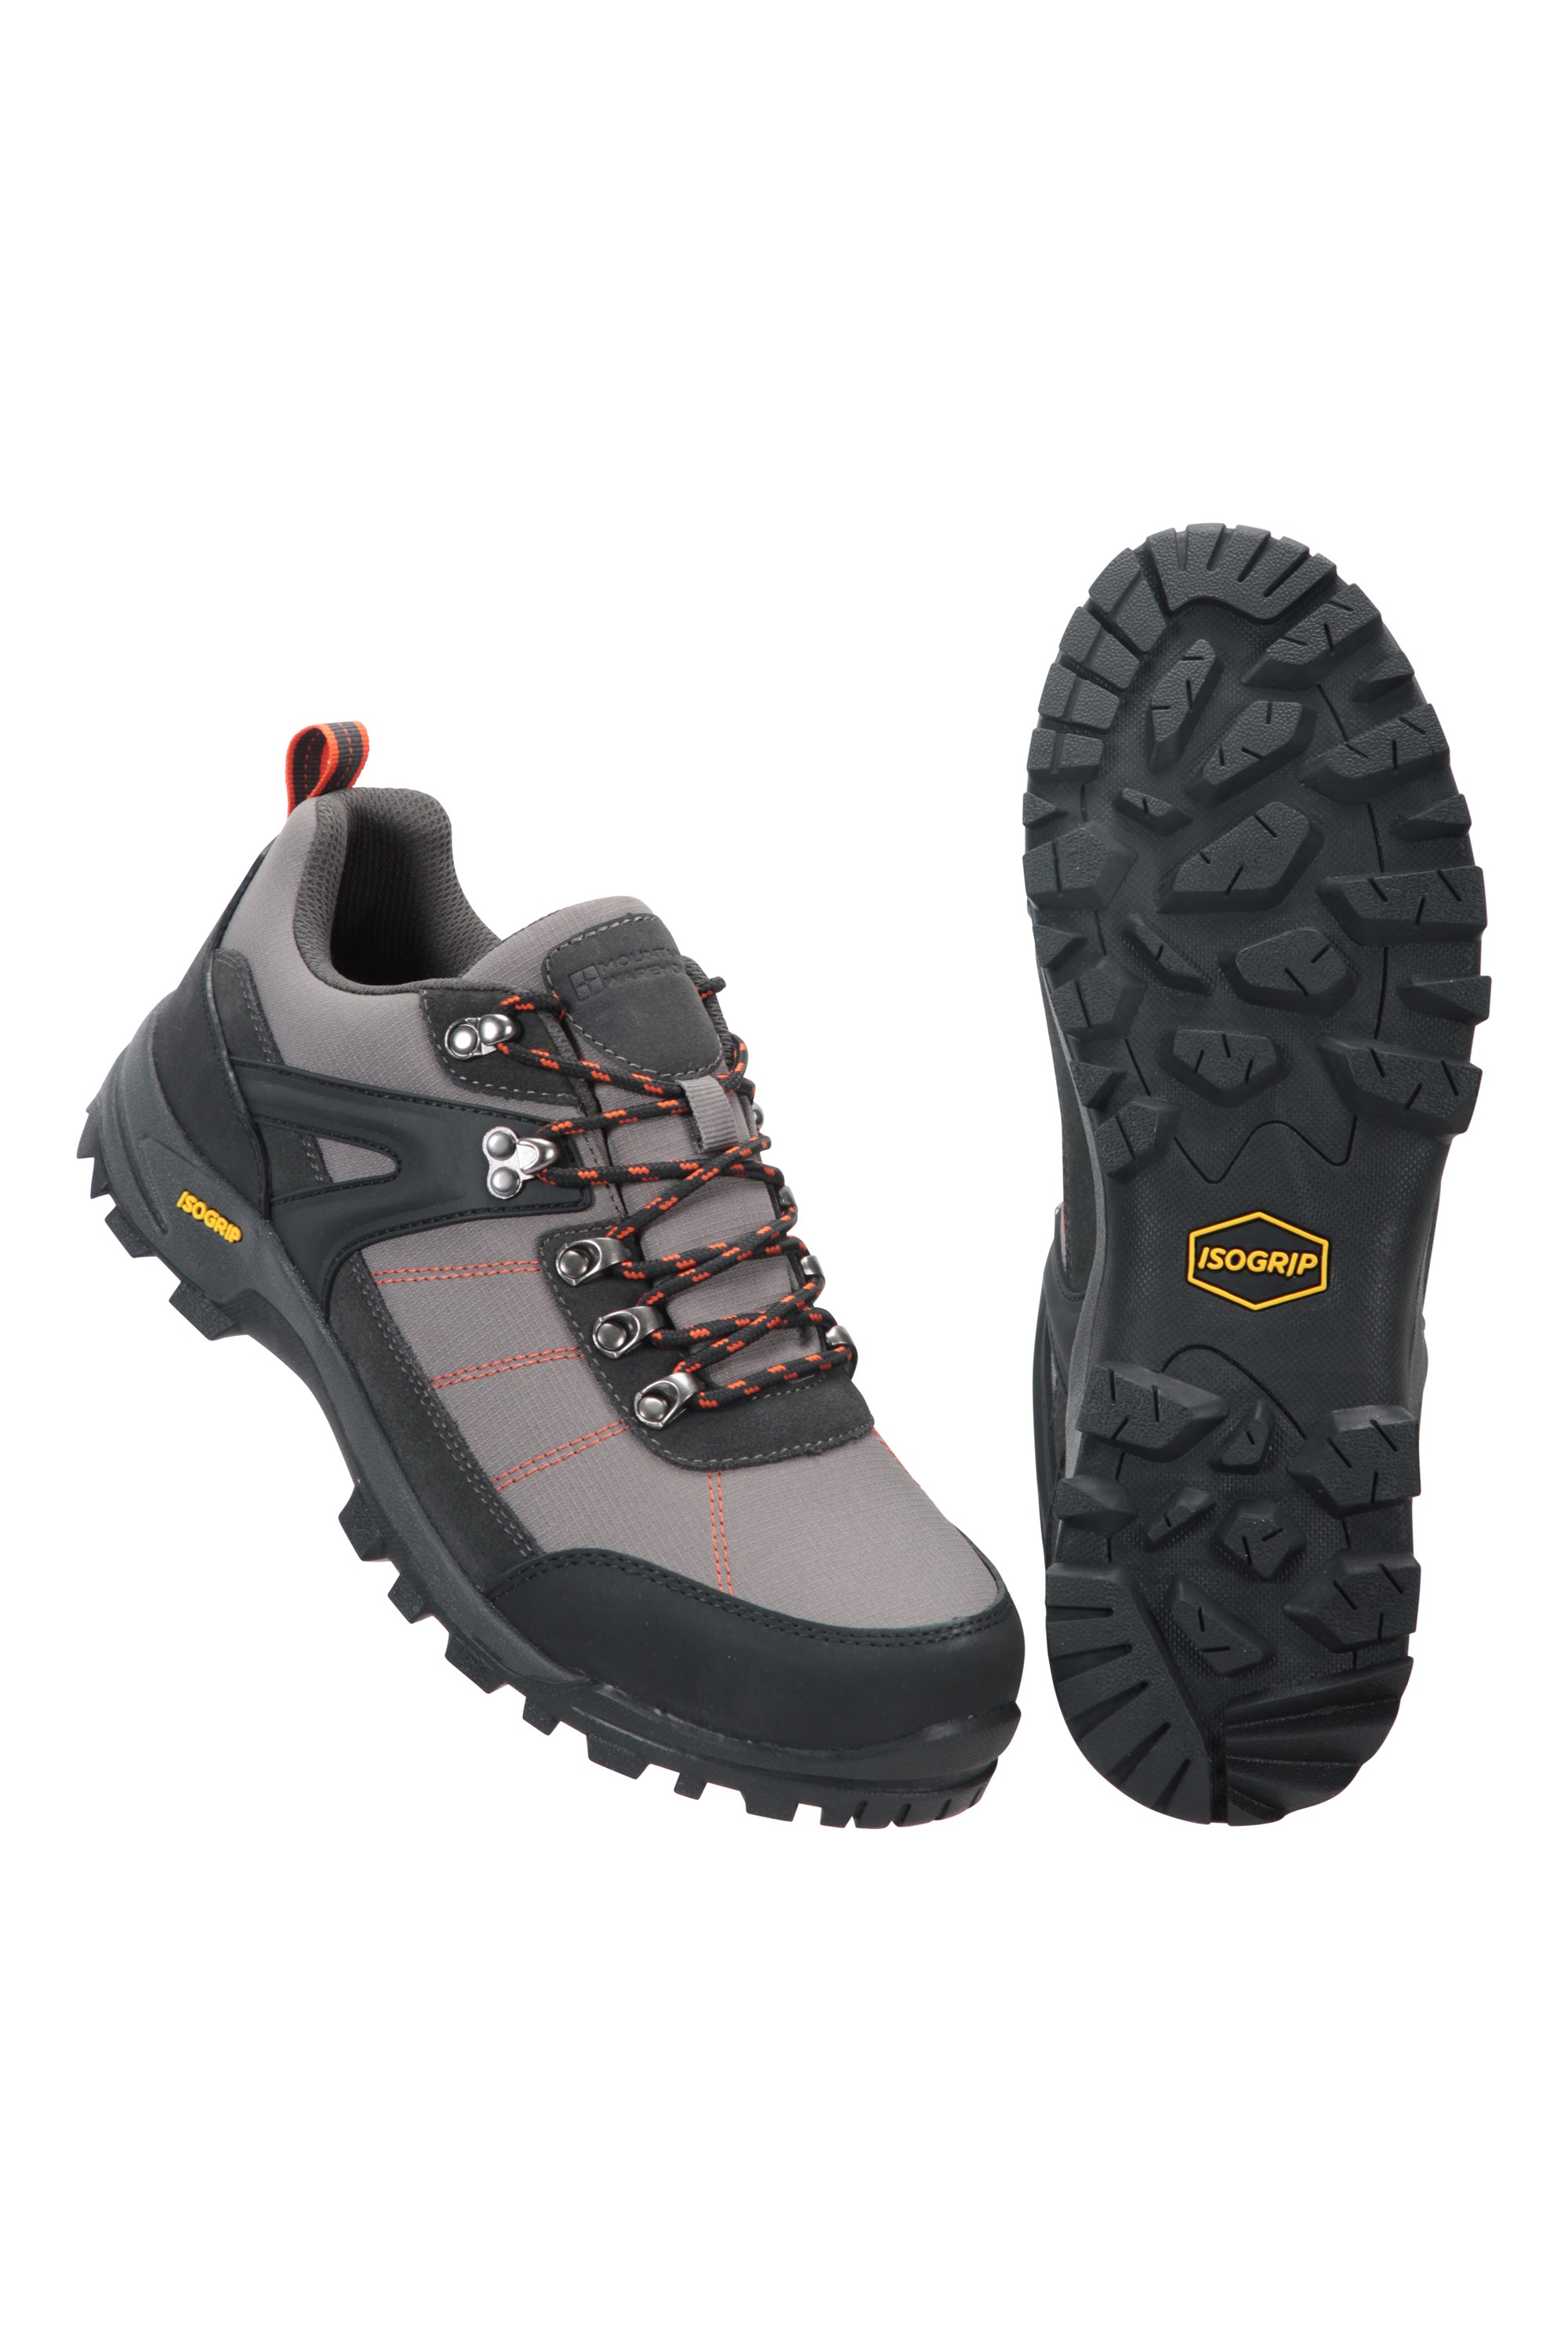 Storm Mens Waterproof Isogrip Walking Shoes - Grey